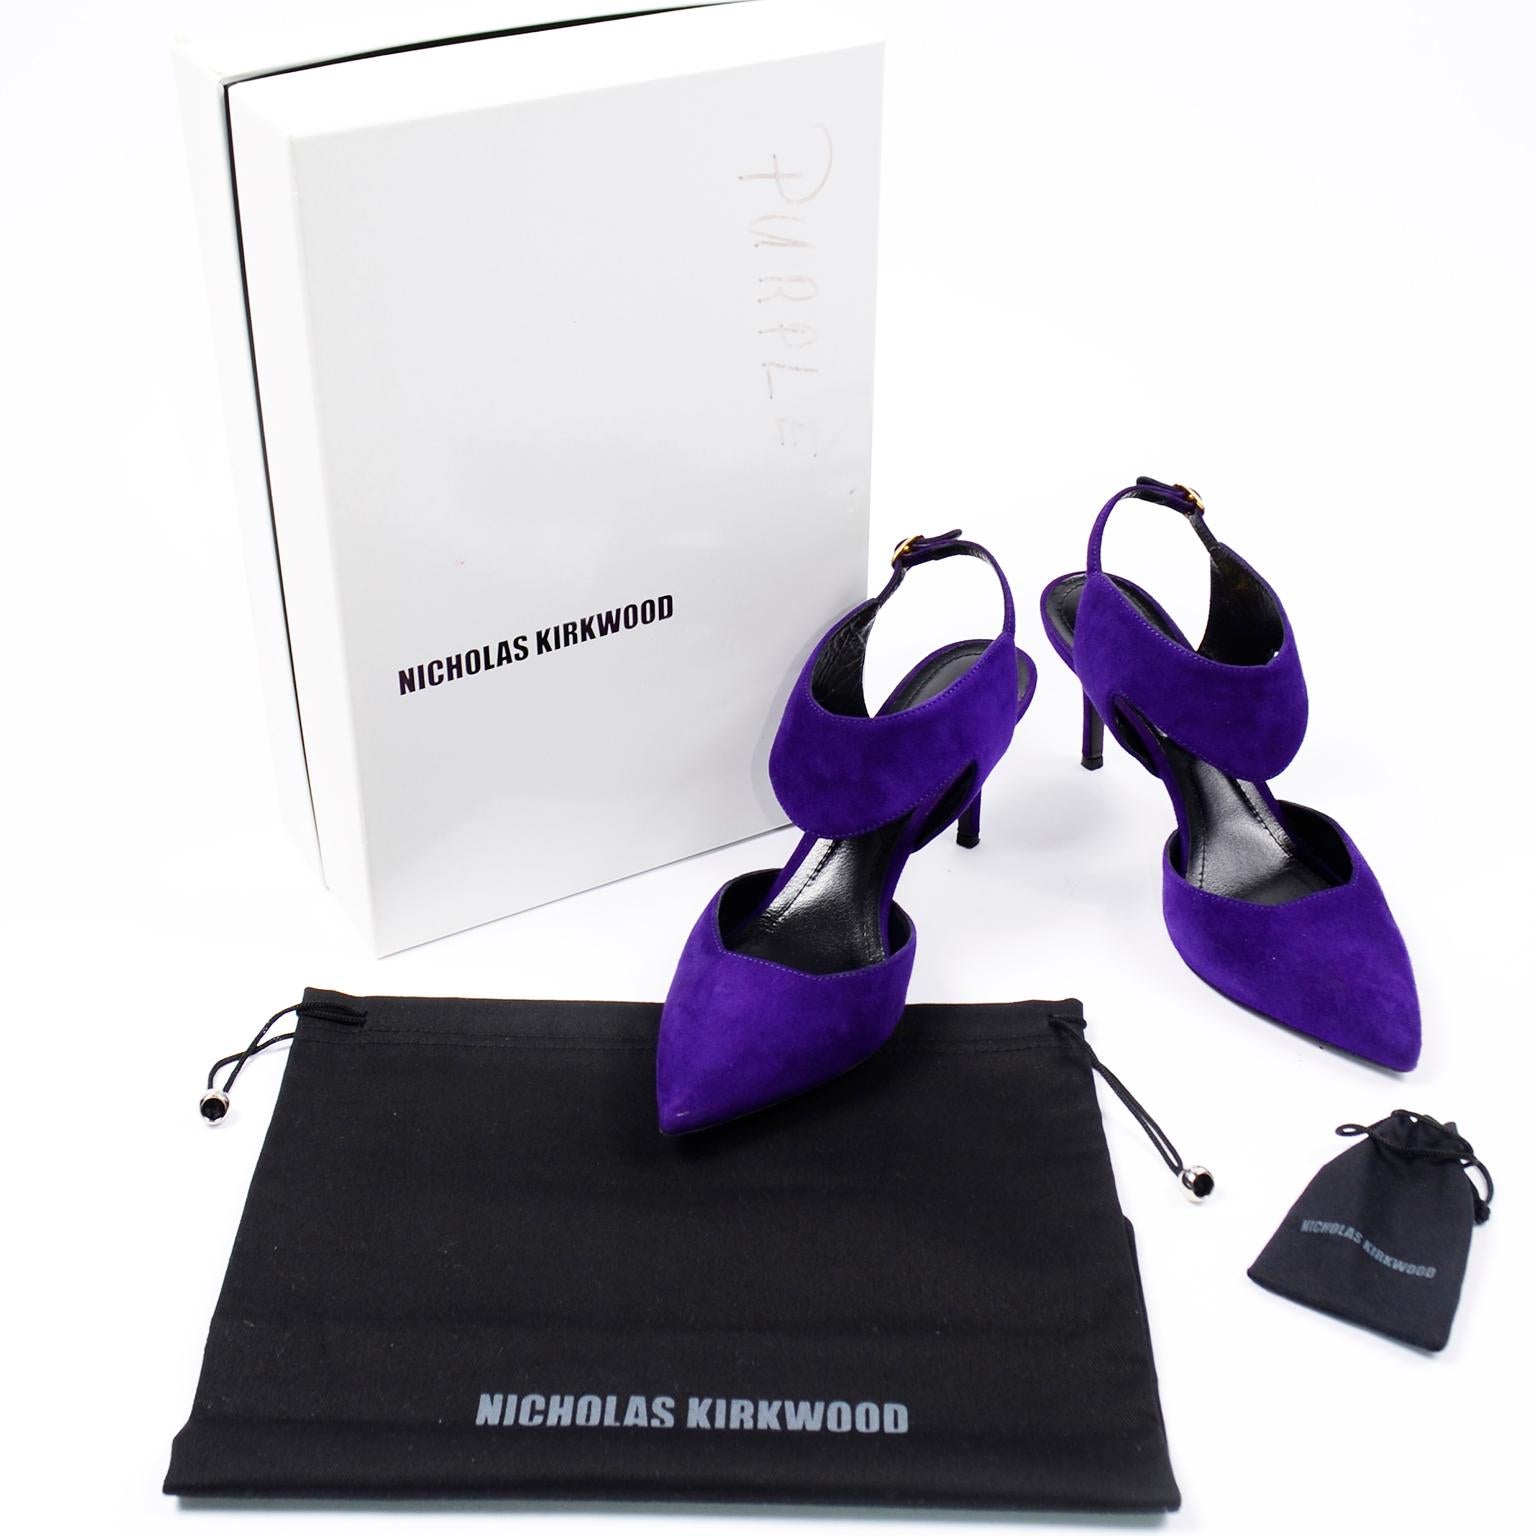 Ces magnifiques talons à bout pointu en cuir velours violet de Nicholas Kirkwood sont dotés d'une bride ajustable à la cheville. Ces chaussures sont accompagnées de leur boîte d'origine, d'un sac à poussière et de talonnettes. Le daim violet est